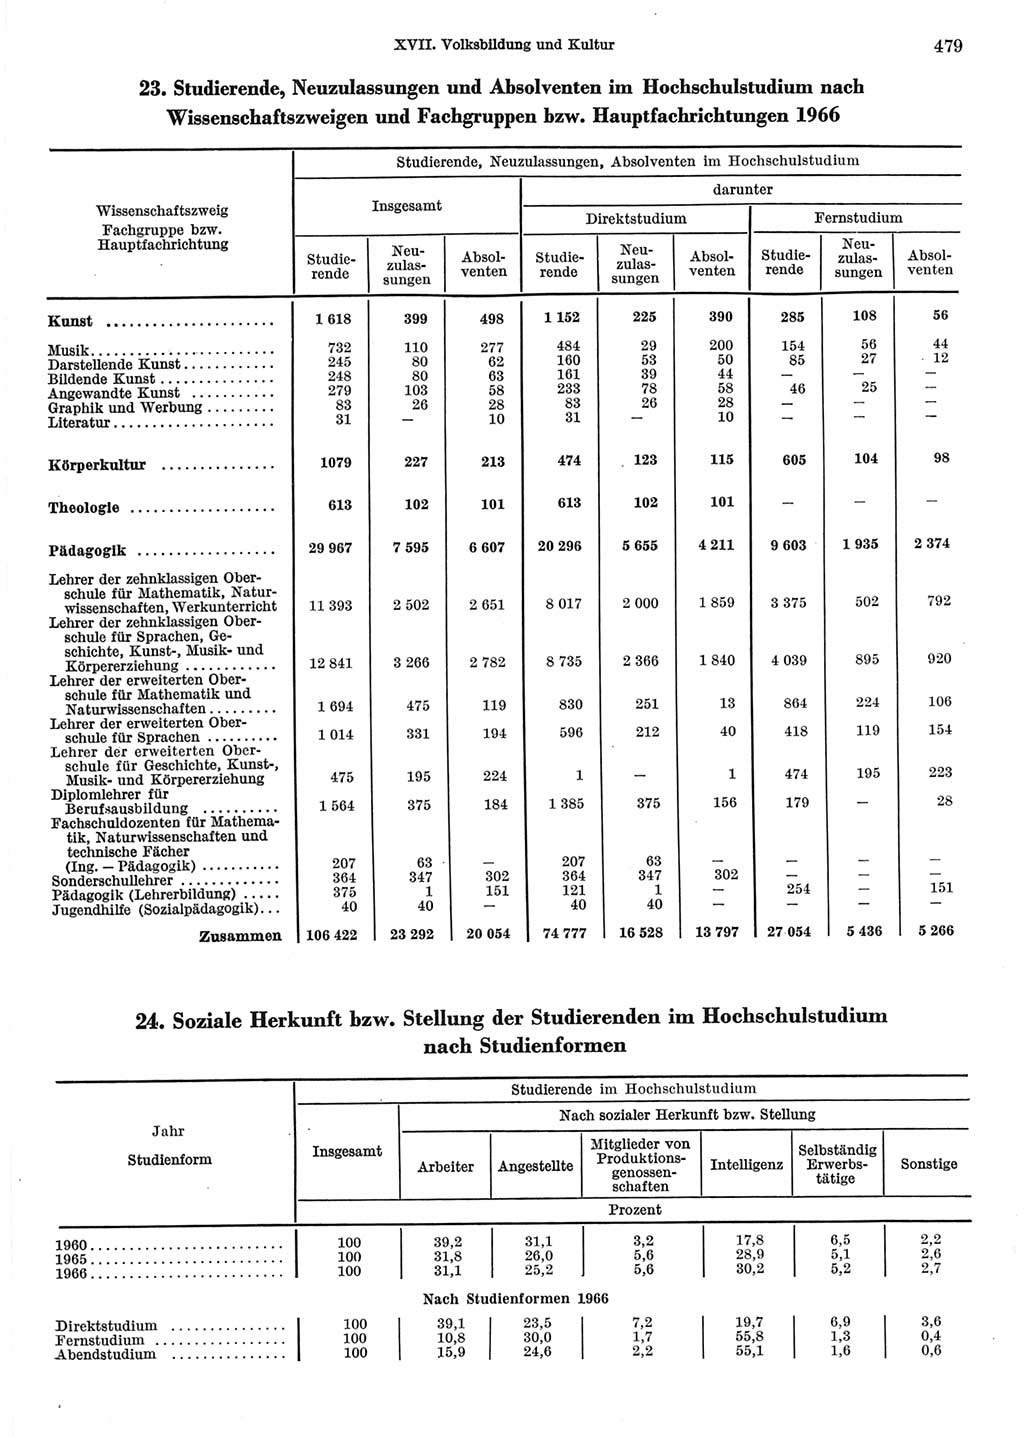 Statistisches Jahrbuch der Deutschen Demokratischen Republik (DDR) 1967, Seite 479 (Stat. Jb. DDR 1967, S. 479)